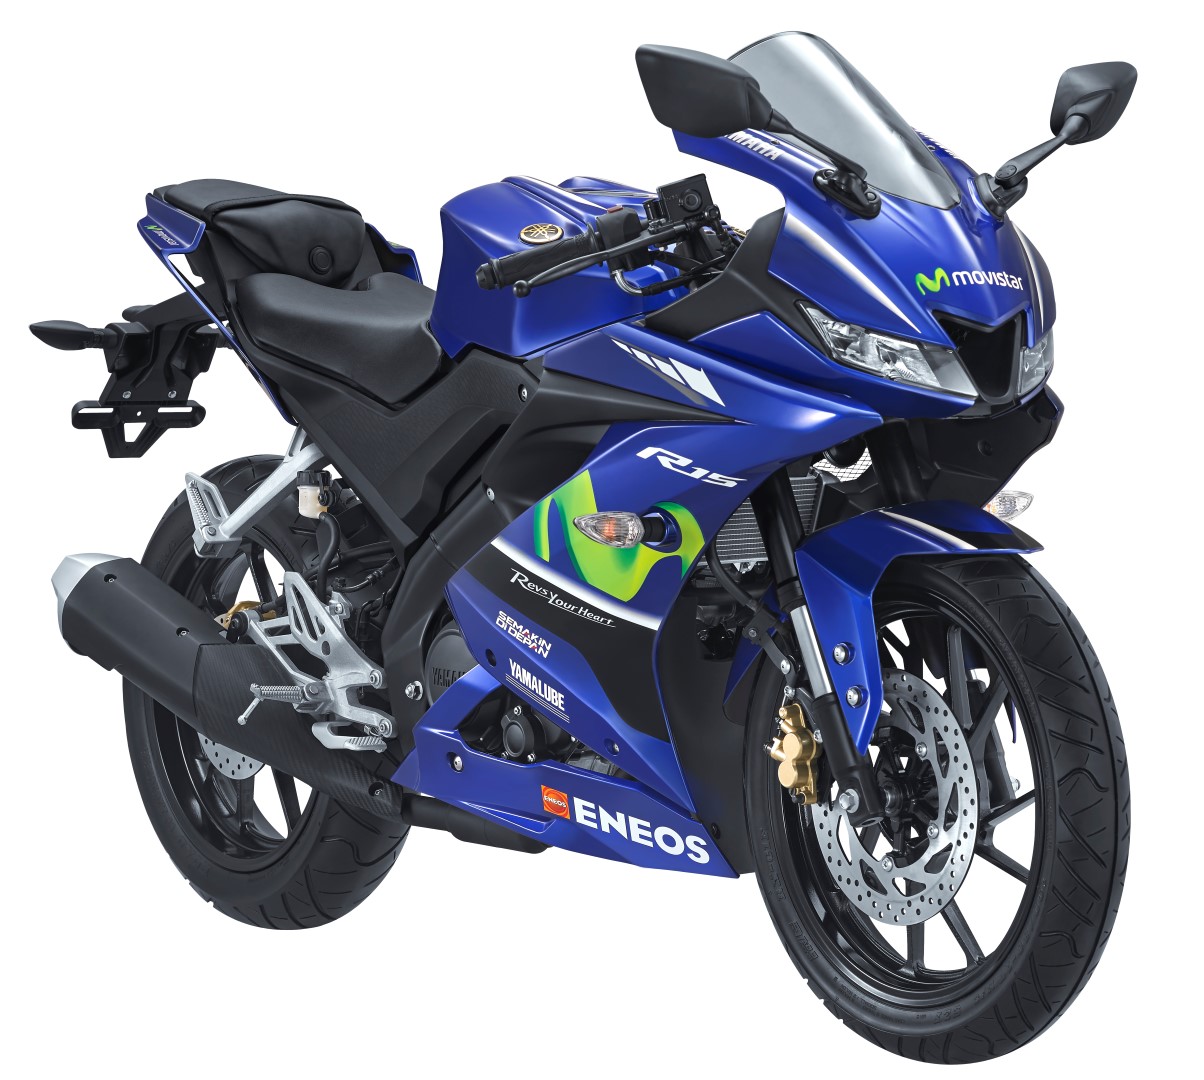 Yamaha Resmi Rilis Versi Liveri Movistar Dari New Vixion Aerox